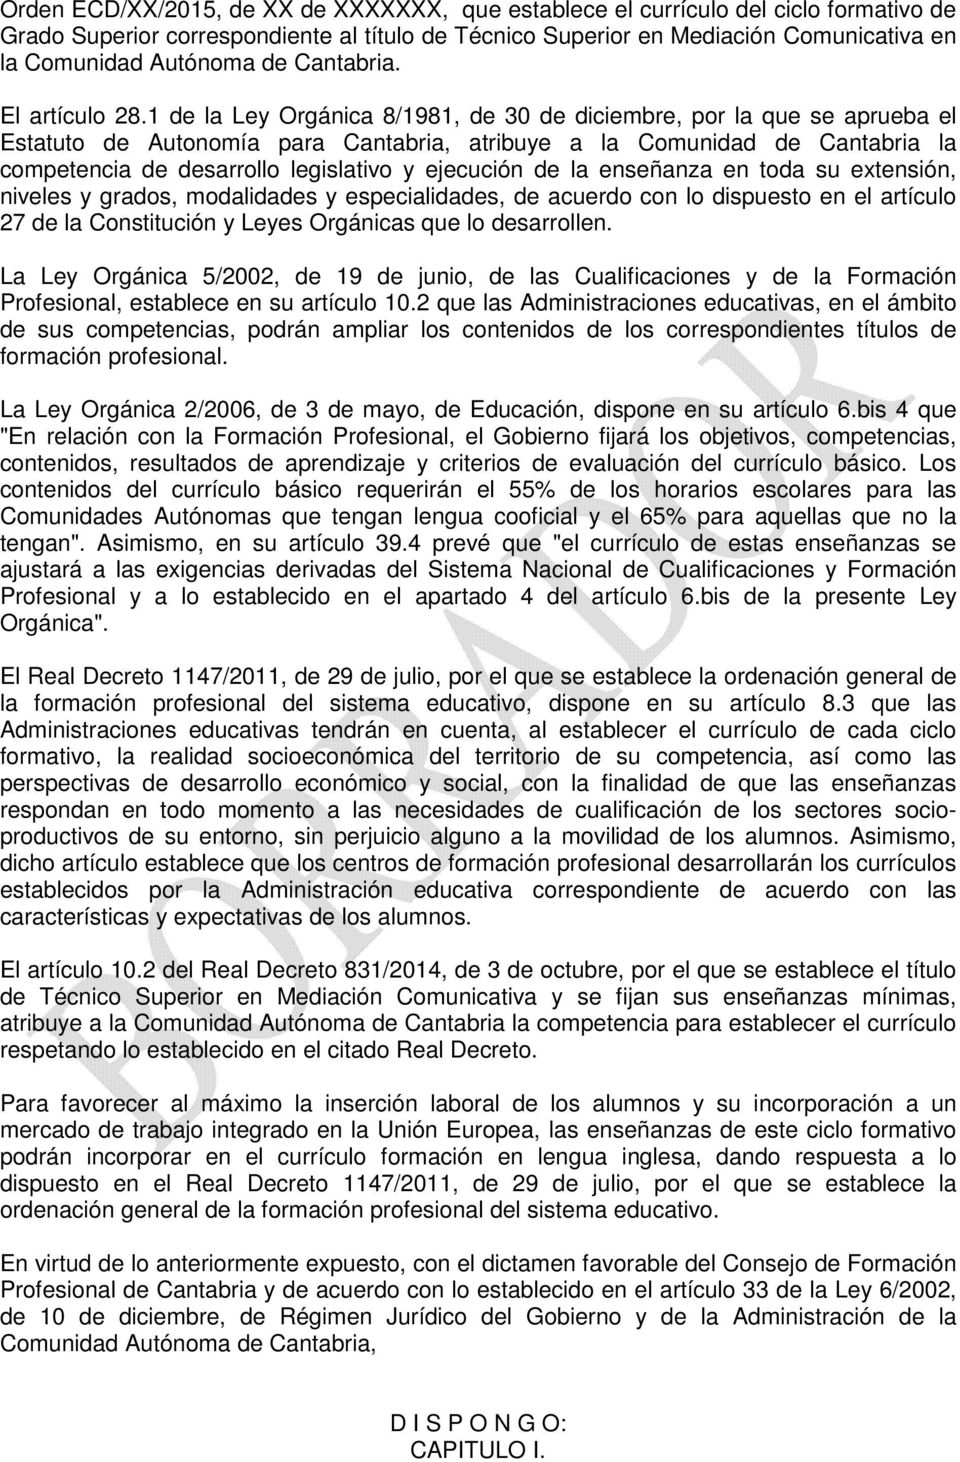 1 de la Ley Orgánica 8/1981, de 30 de diciembre, por la que se aprueba el Estatuto de Autonomía para Cantabria, atribuye a la Comunidad de Cantabria la competencia de desarrollo legislativo y